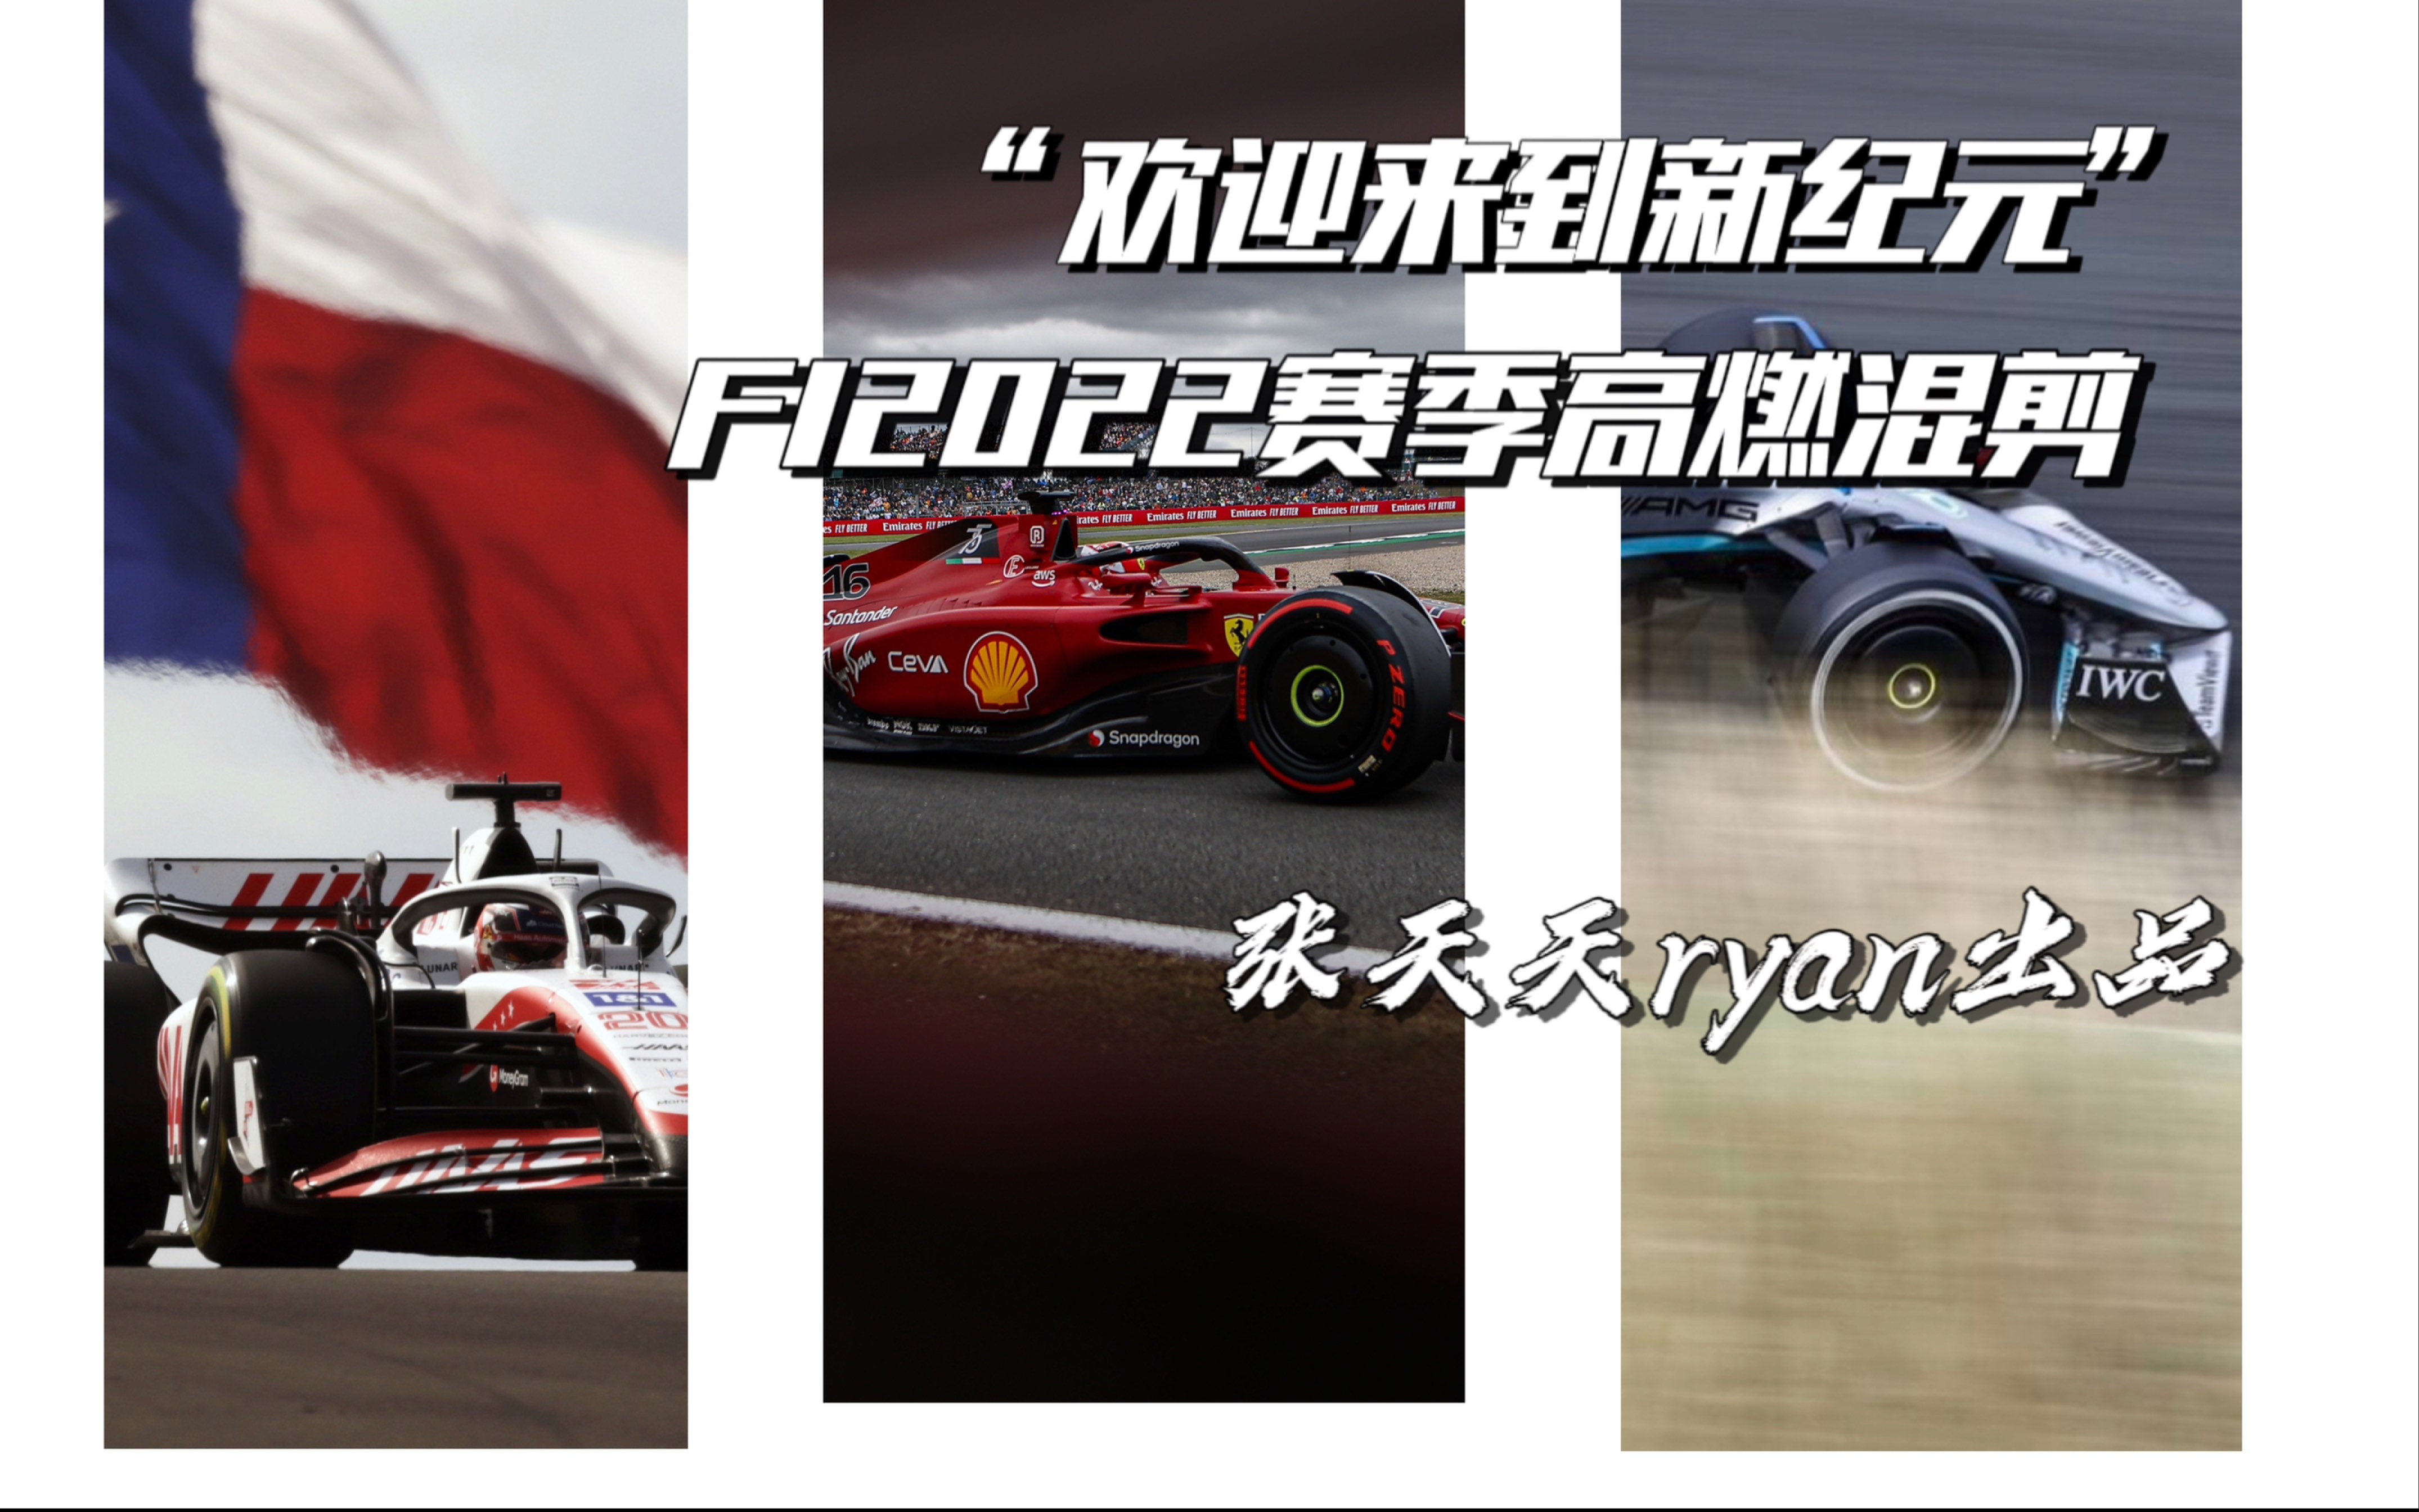 【F1/前方高燃/AJR】“欢迎来到新纪元”f12022赛季精彩回顾